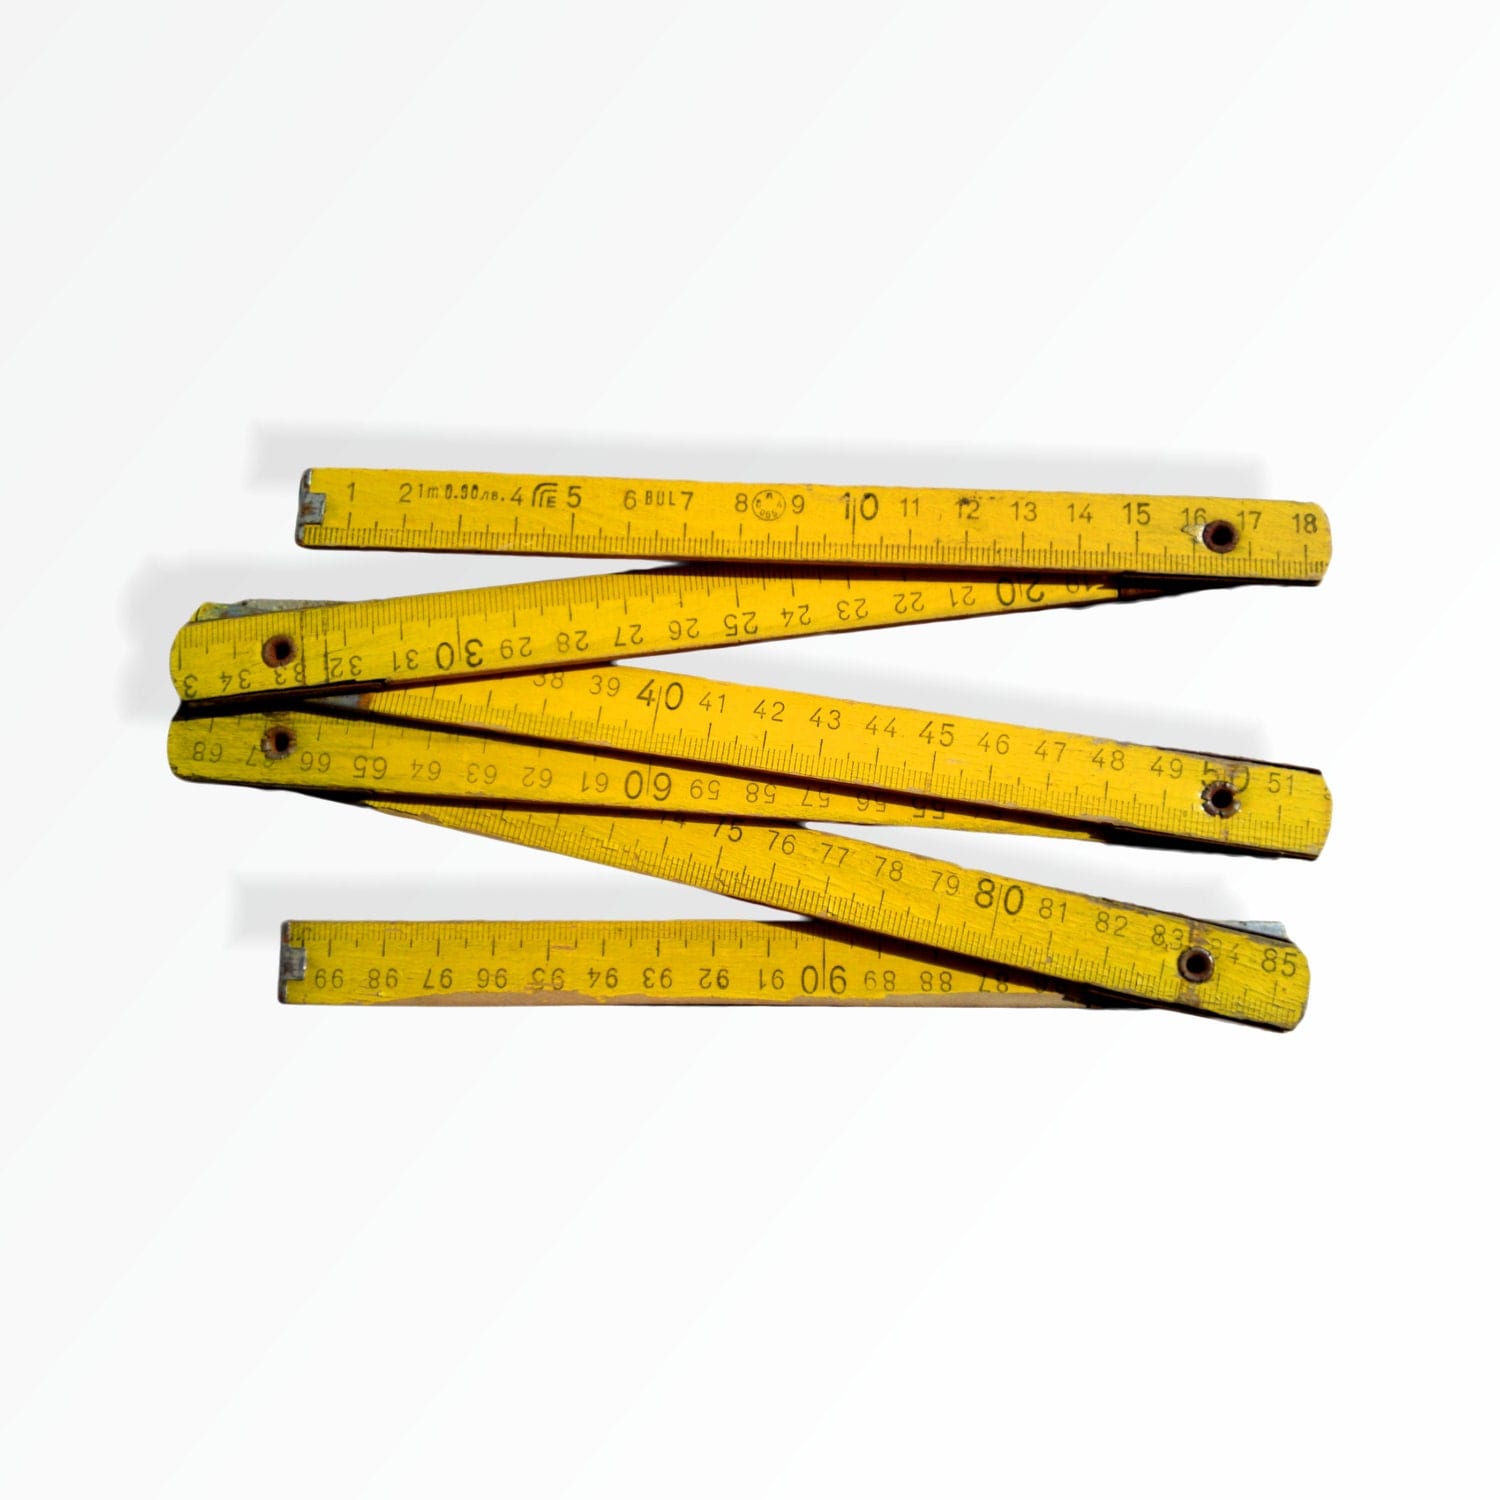 Vintage ruler wooden folding ruler antique ruler by 